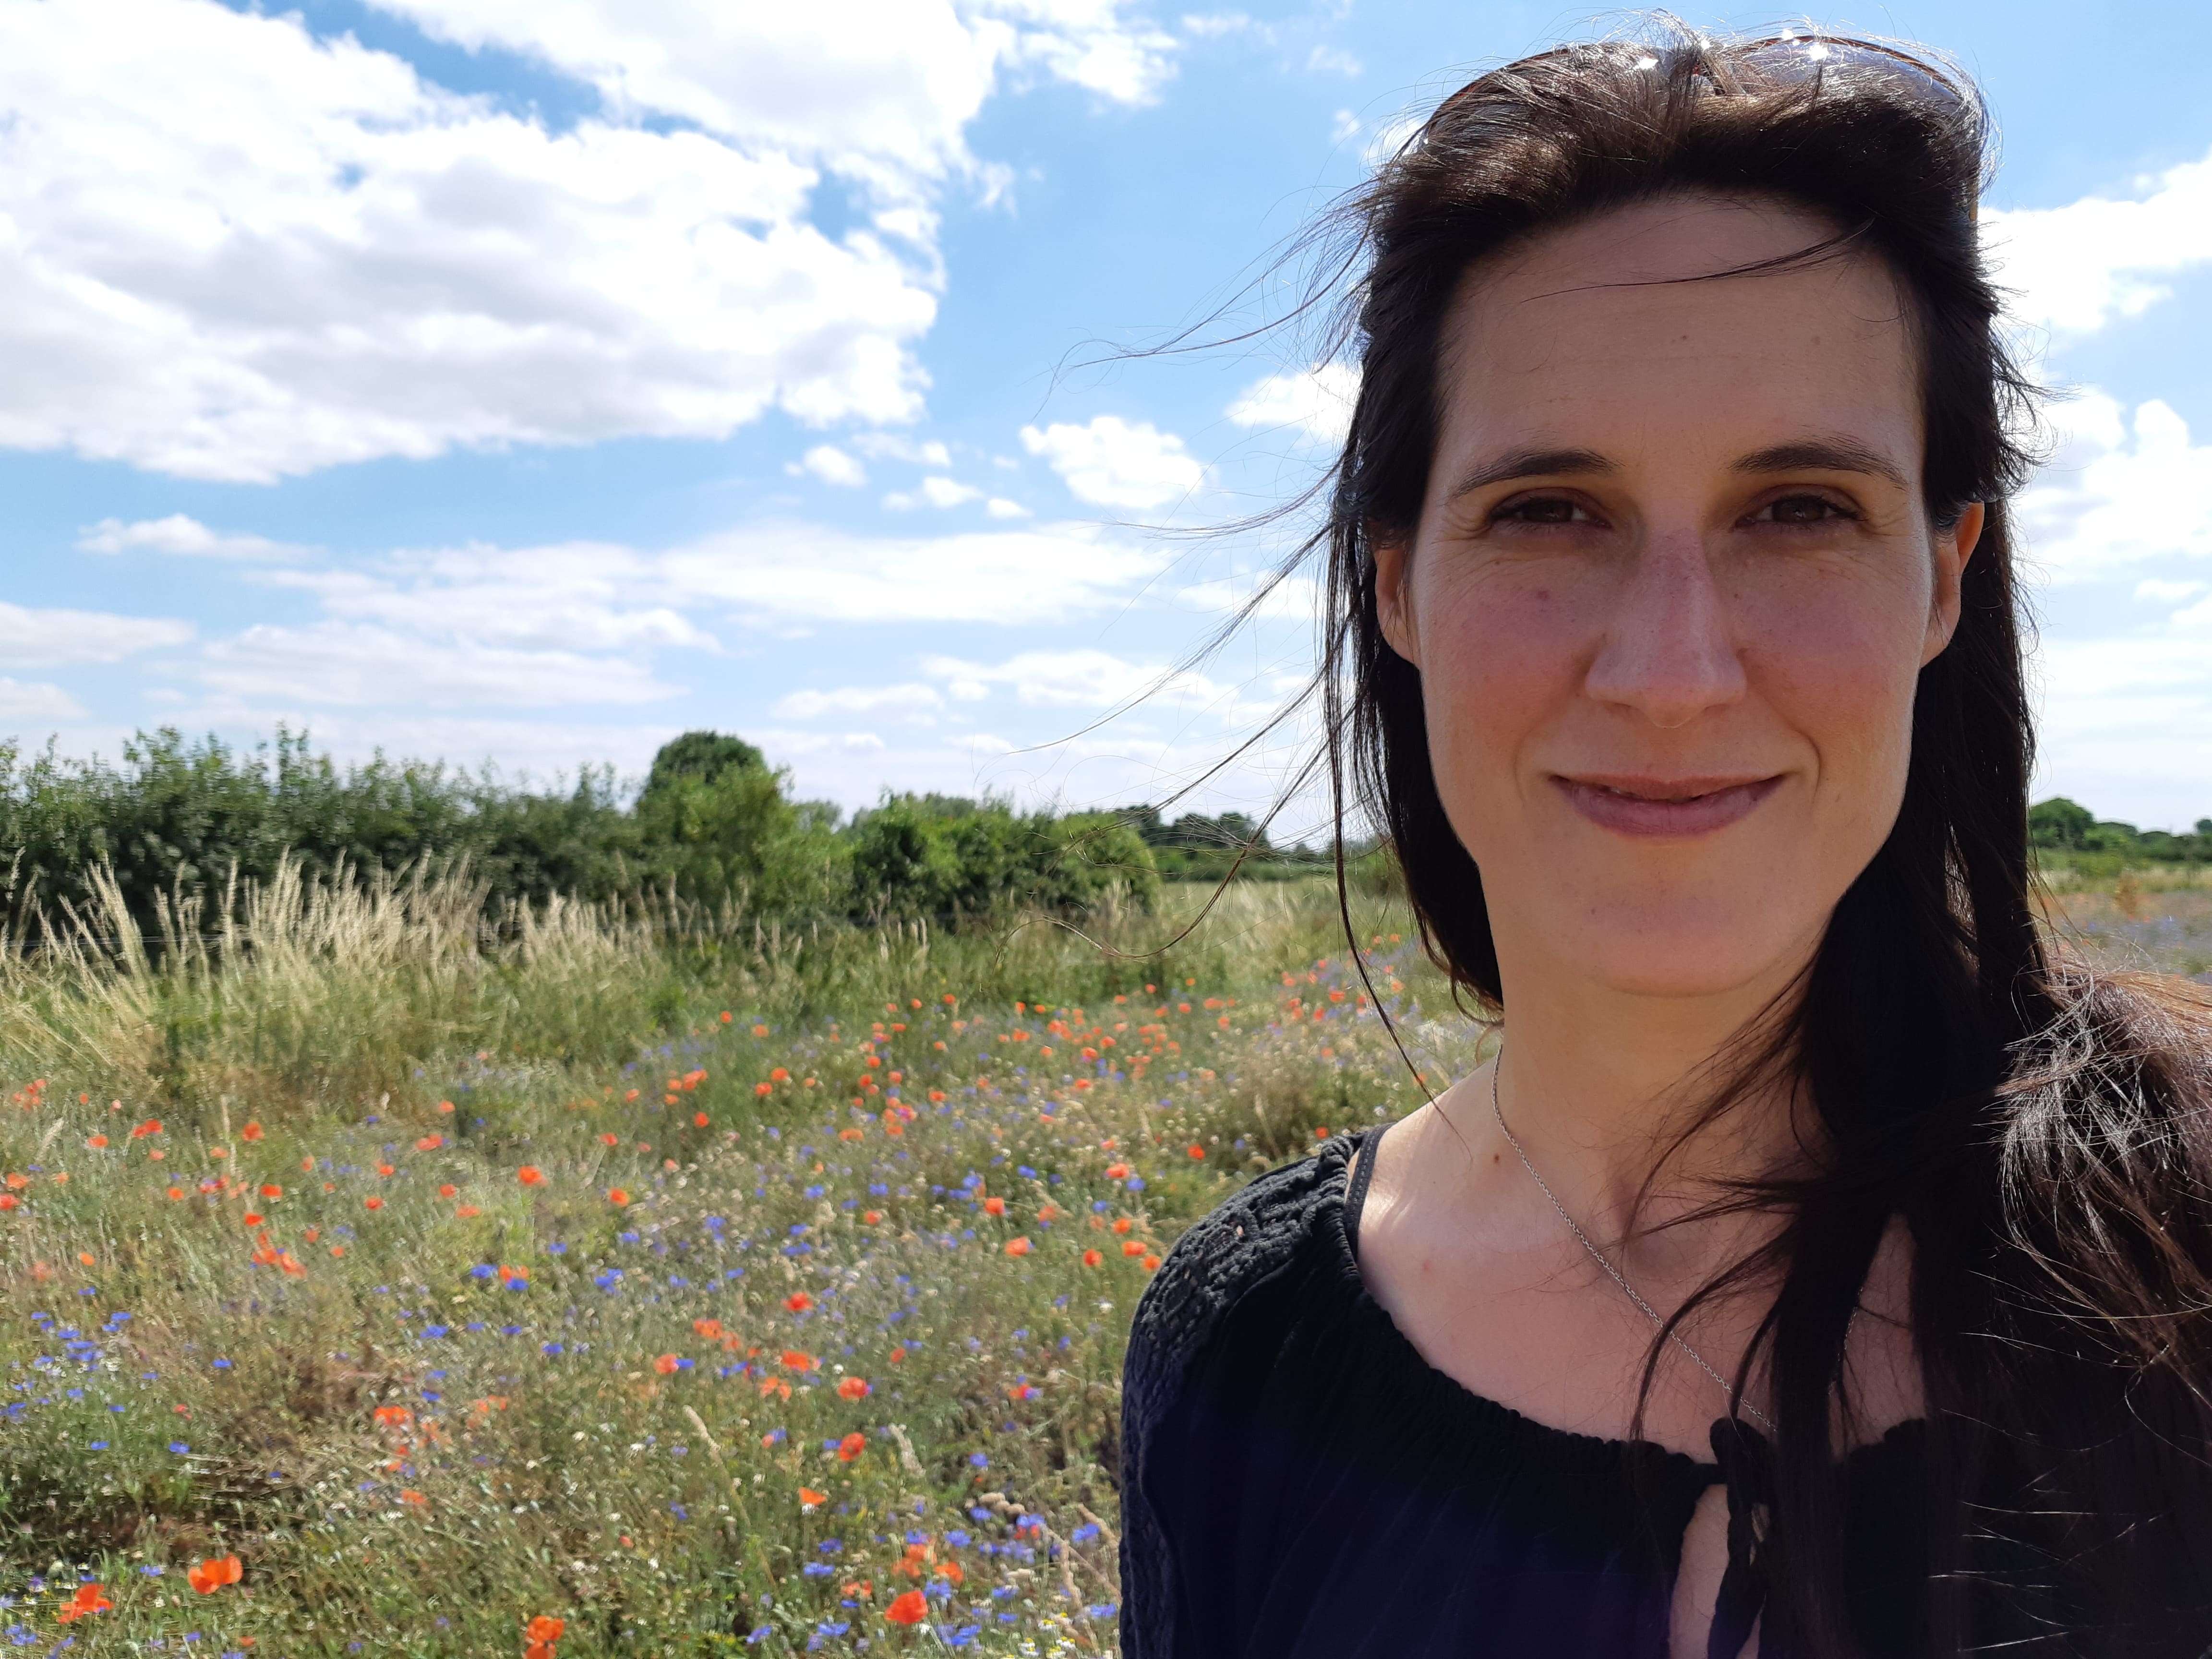 Marieke Ketelaar, wildflower meadows in towns and cities